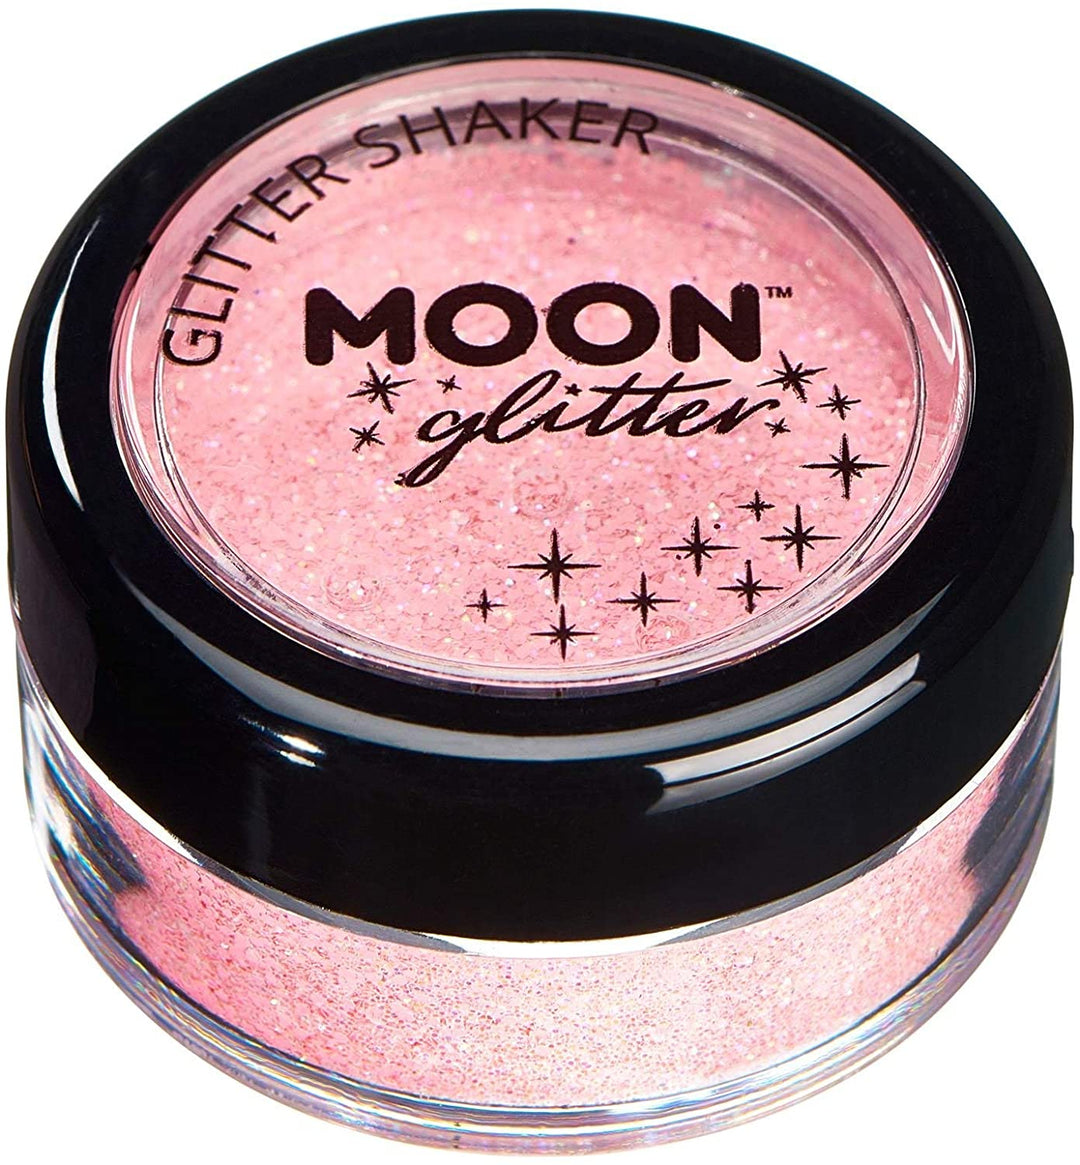 Pastell-Glitzerstreuer von Moon Glitter – Koralle – kosmetischer Festival-Make-up-Glitzer für Gesicht, Körper, Nägel, Haare, Lippen – 5 g